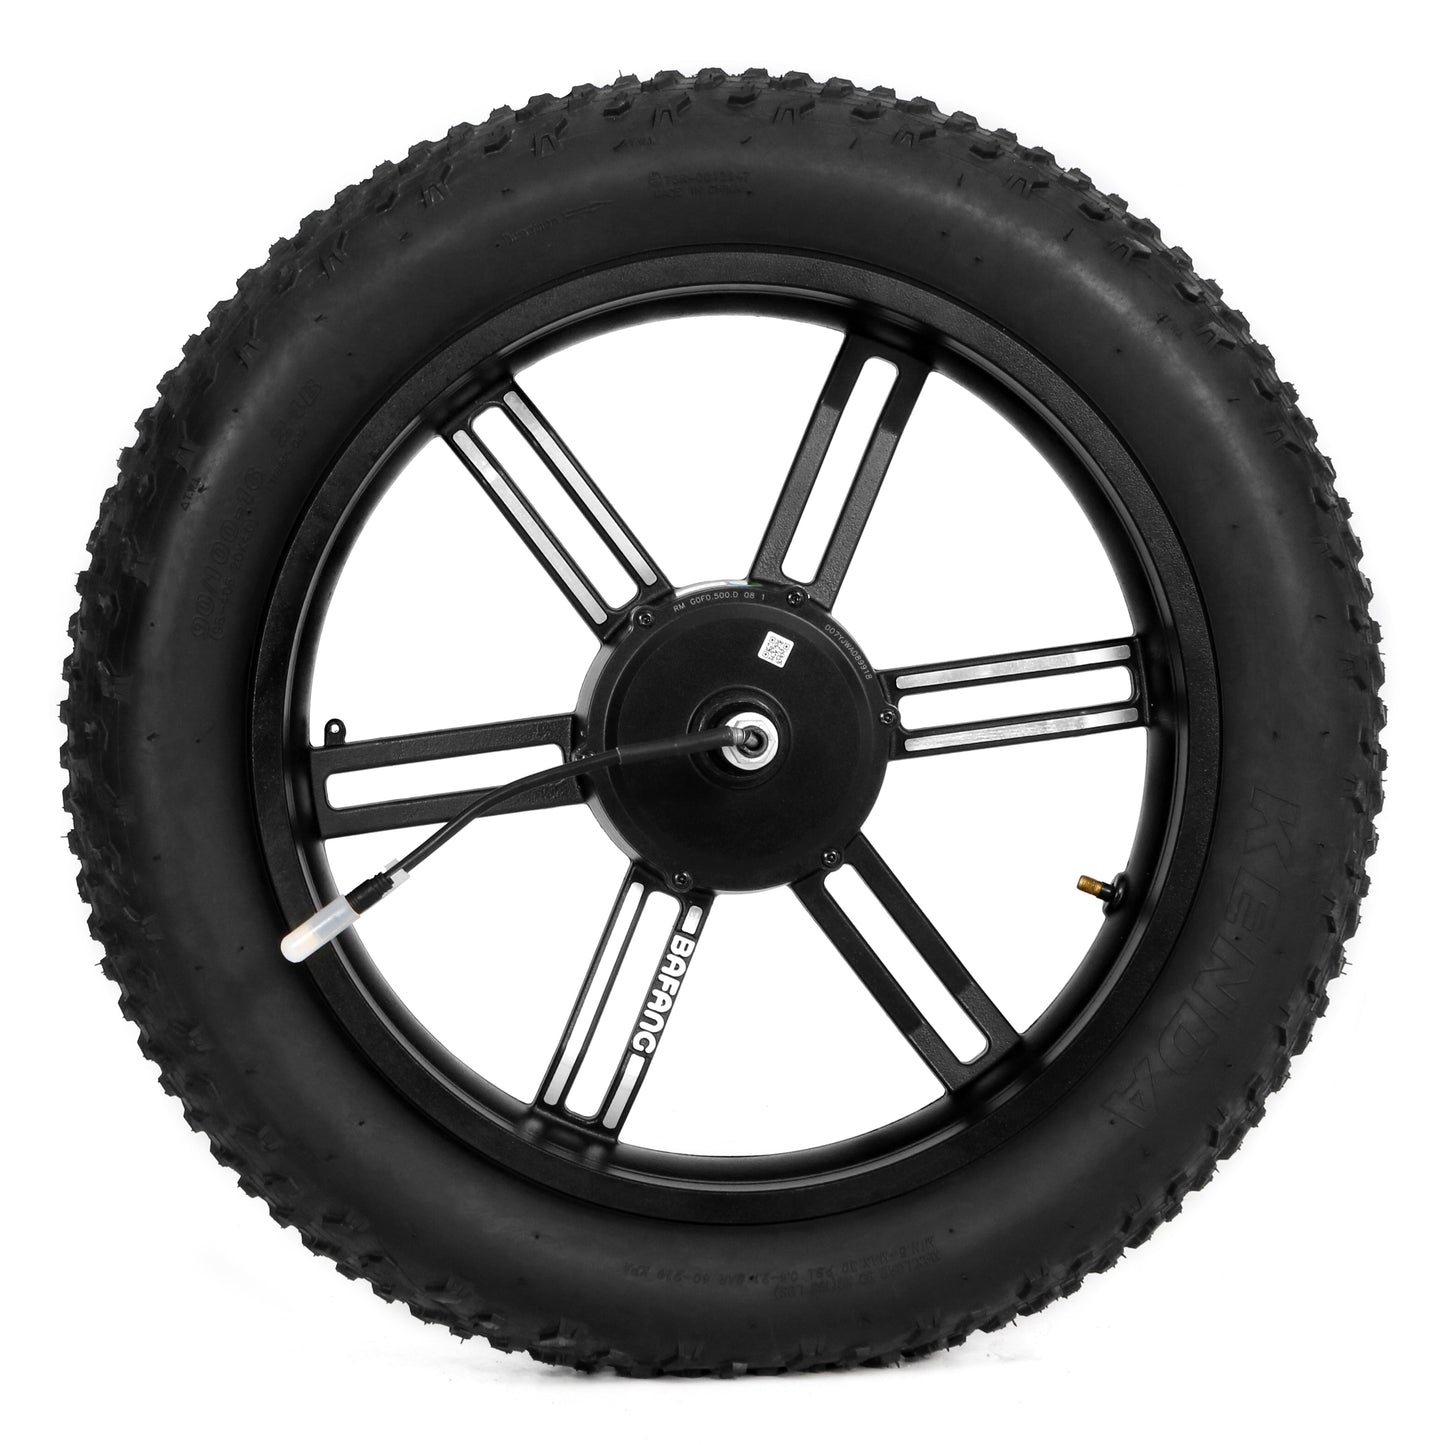 Bafang 500W Rear Wheel With Tire